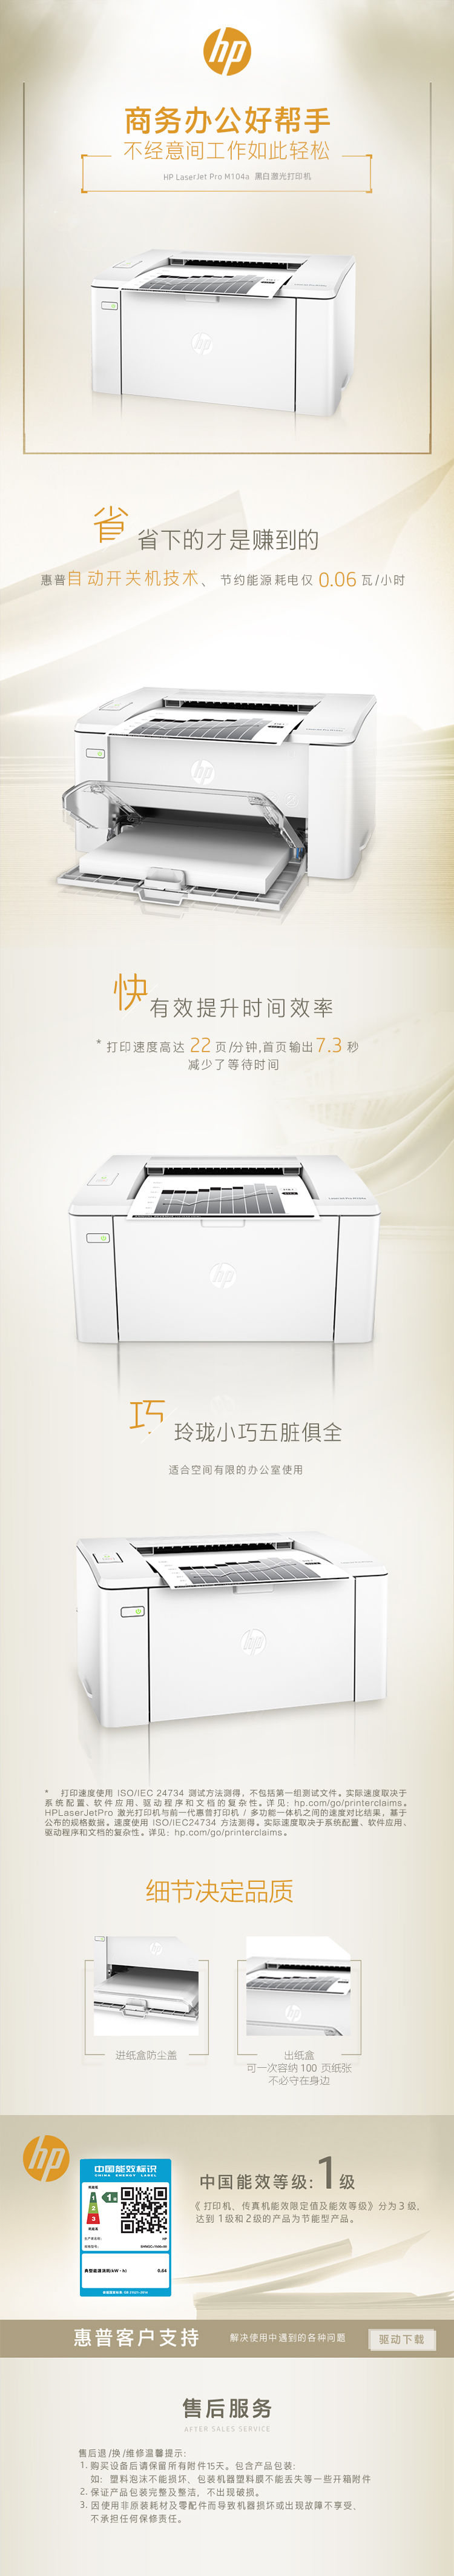 惠普/HP LaserJet Pro M104a A4幅面激光打印机(图5)